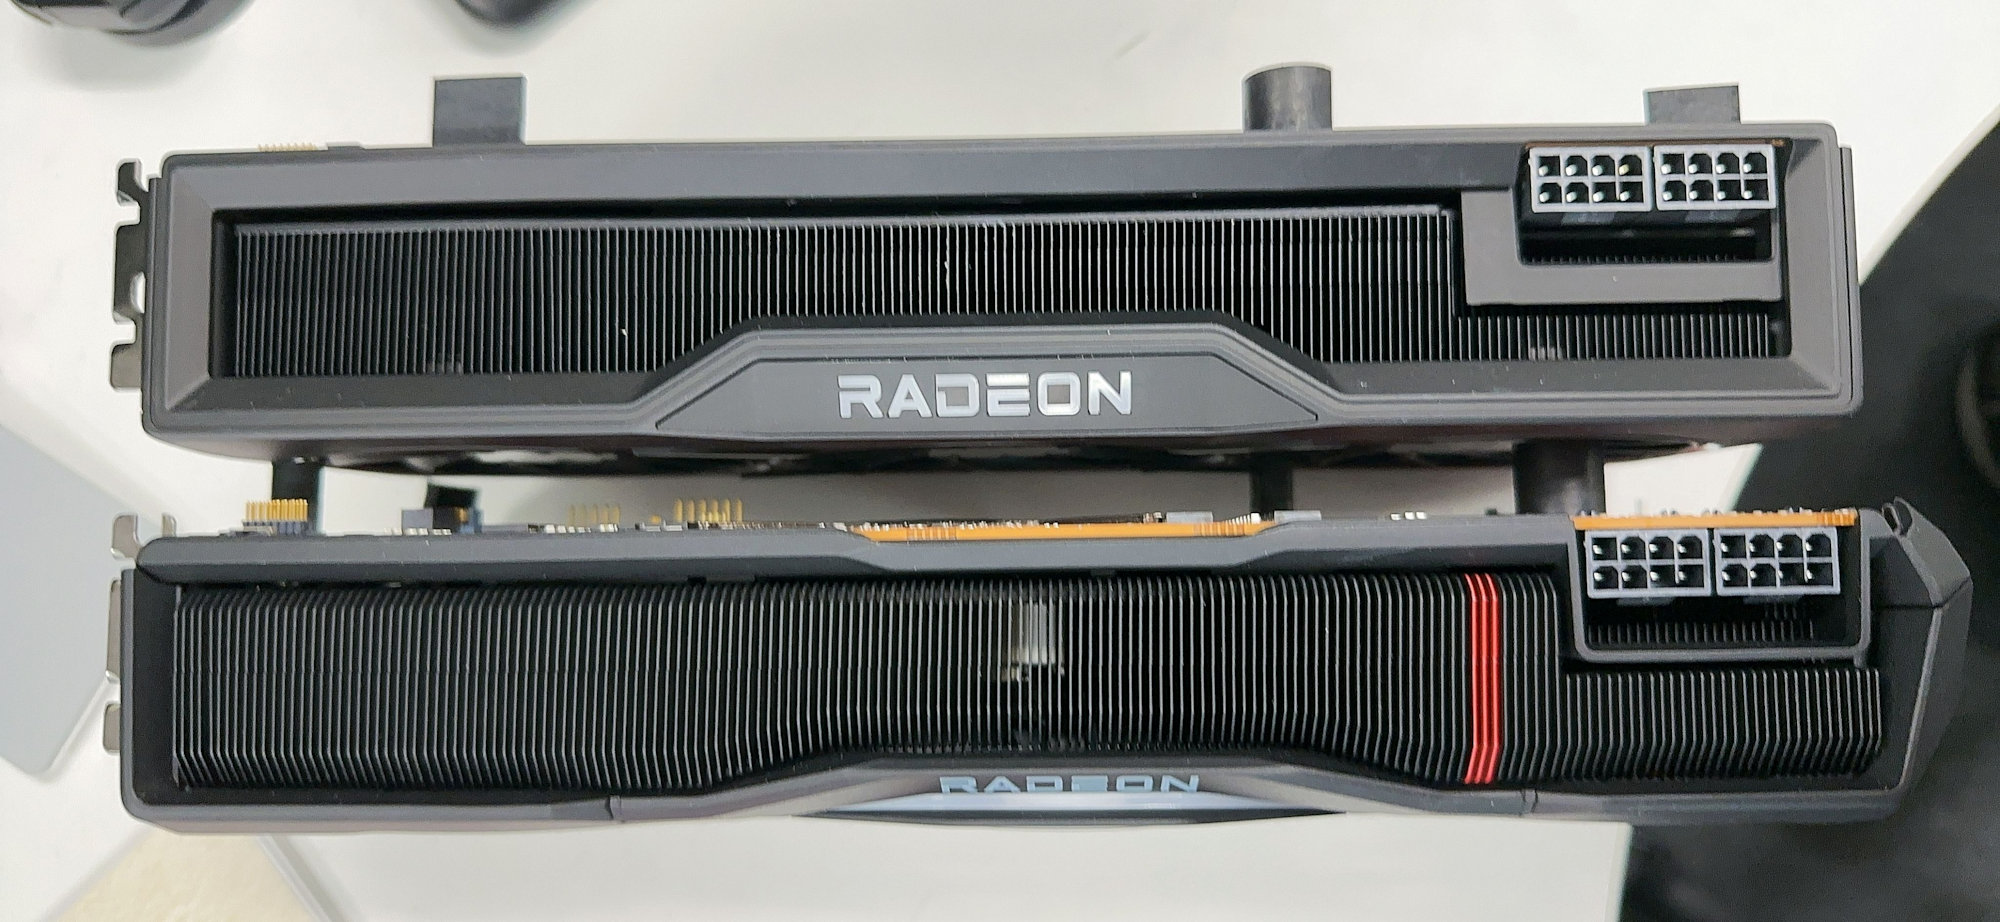 amd radeon rx 7000 2 หลุดภาพการ์ดจอ AMD Radeon RX 7900 รุ่นใหม่ล่าสุดใช้ช่องต่อไฟเลี้ยง 8พินเพียง 2ช่องเท่านั้น 